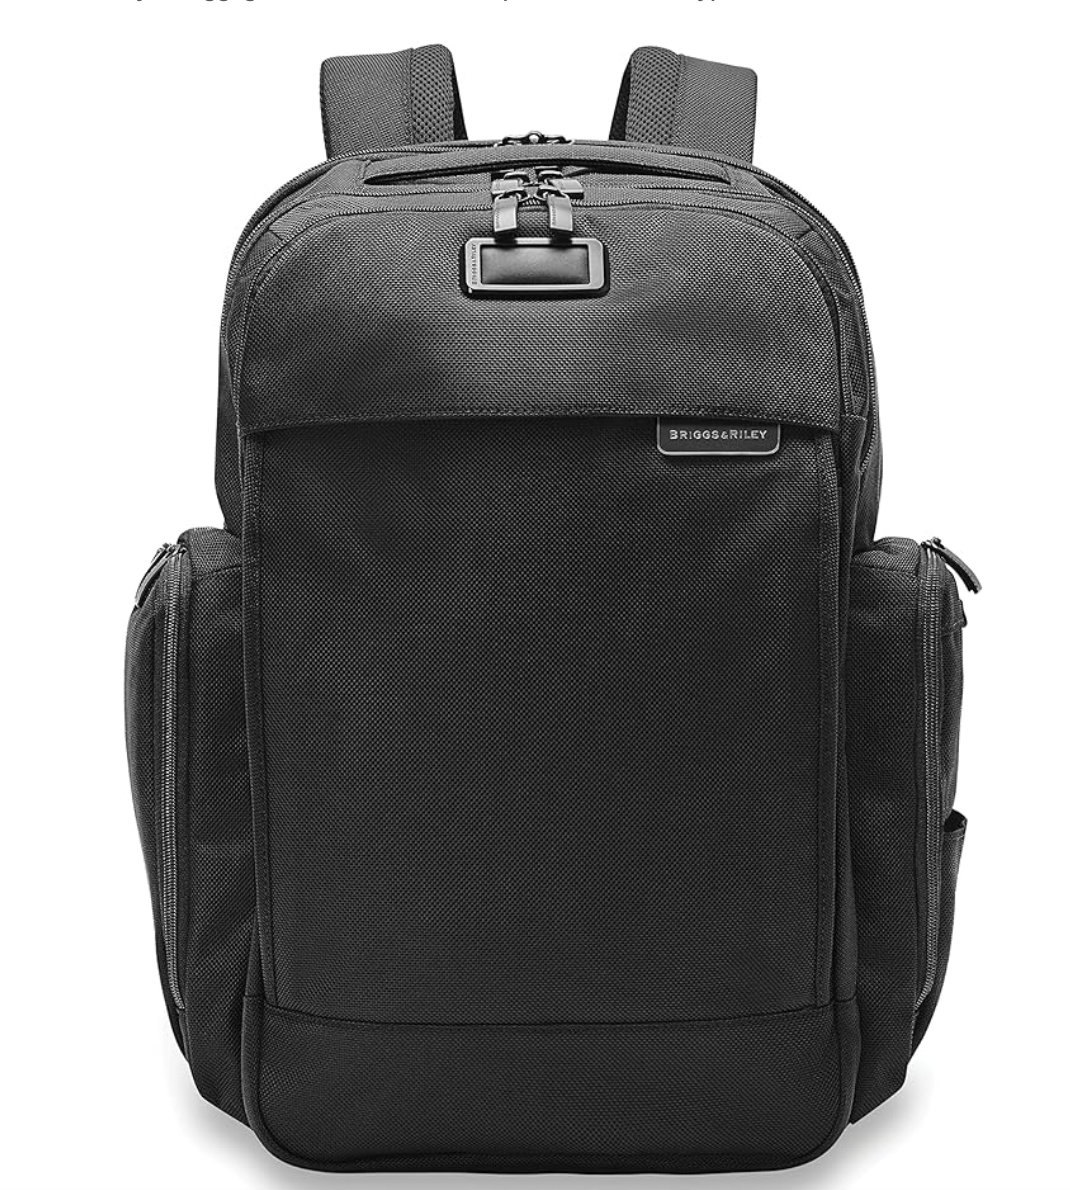 Traveler Backpack